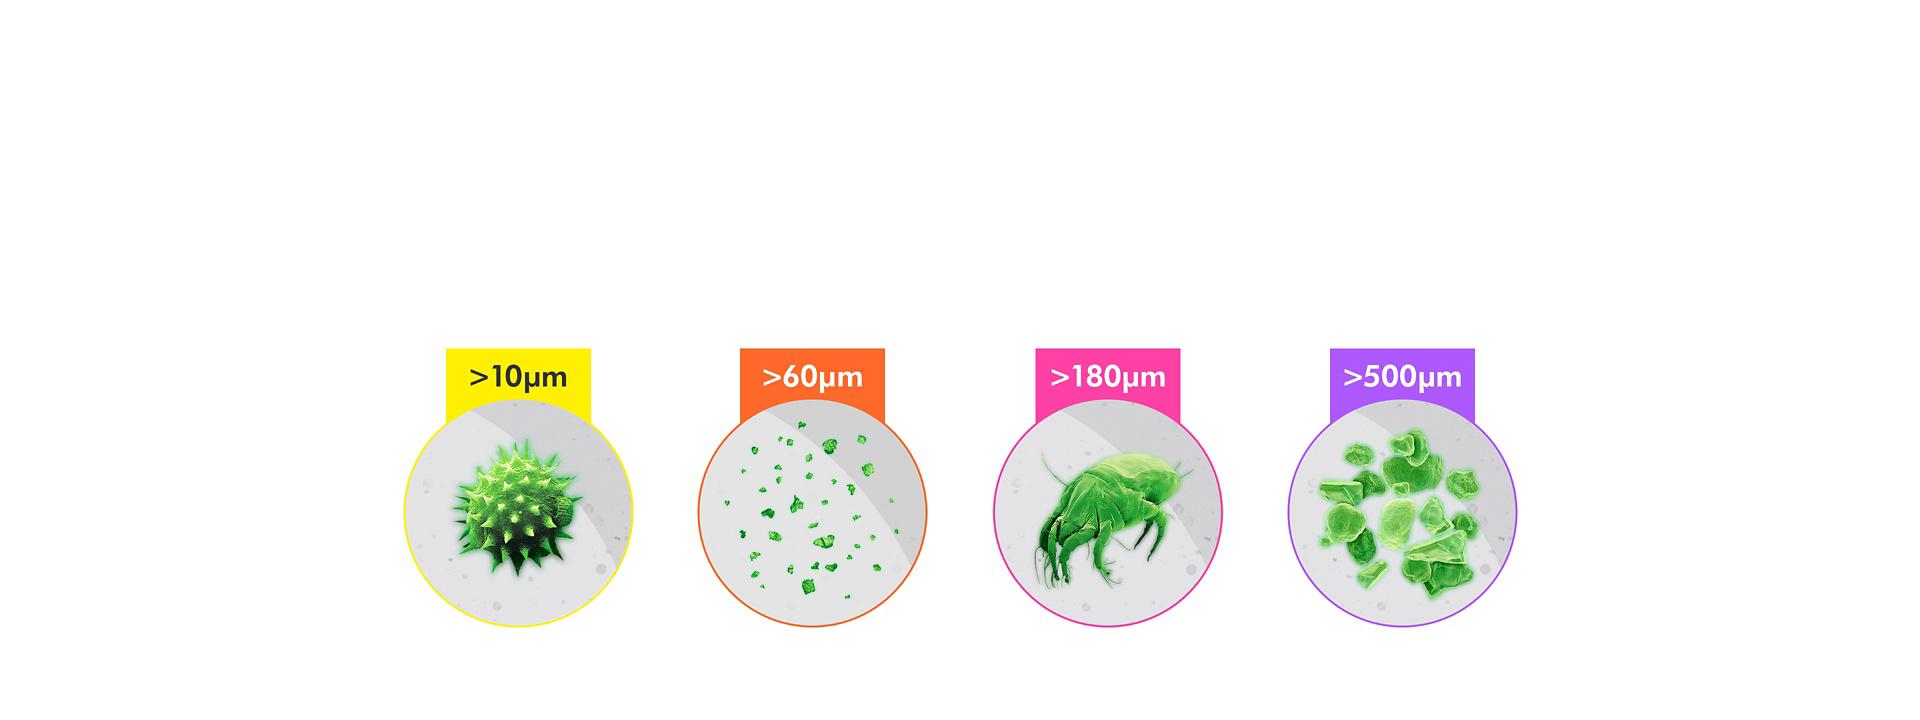 Empat kategori partikel yang dihitung oleh penyedot debu